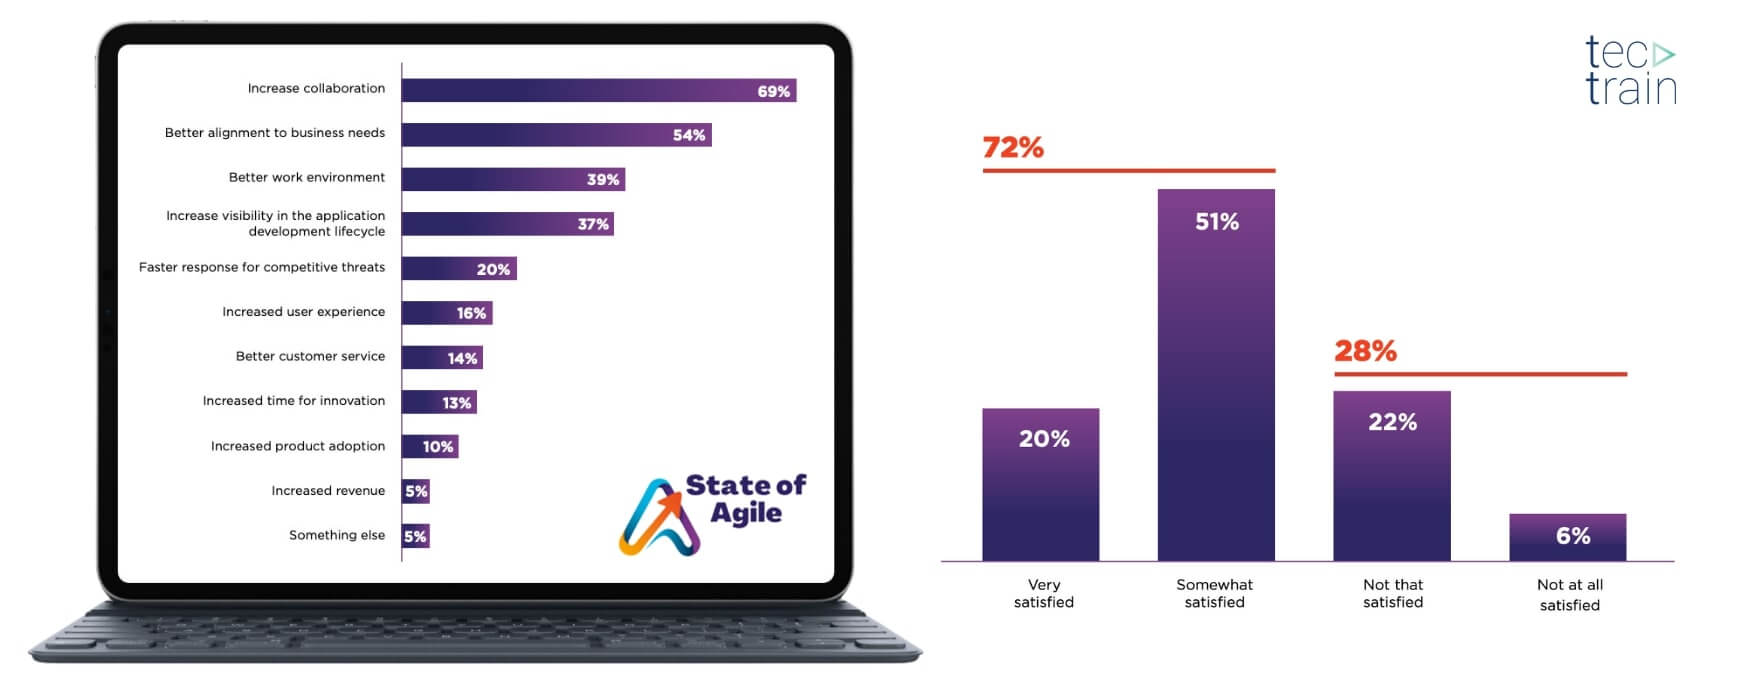 Der 16. Agile-Statusbericht sammelte Erkenntnisse von über 3.000 Menschen in der Agile-Community im Jahr 2022 und enthüllte die wichtigsten Faktoren, die zur Zufriedenheit mit Agile-Praktiken beitragen.